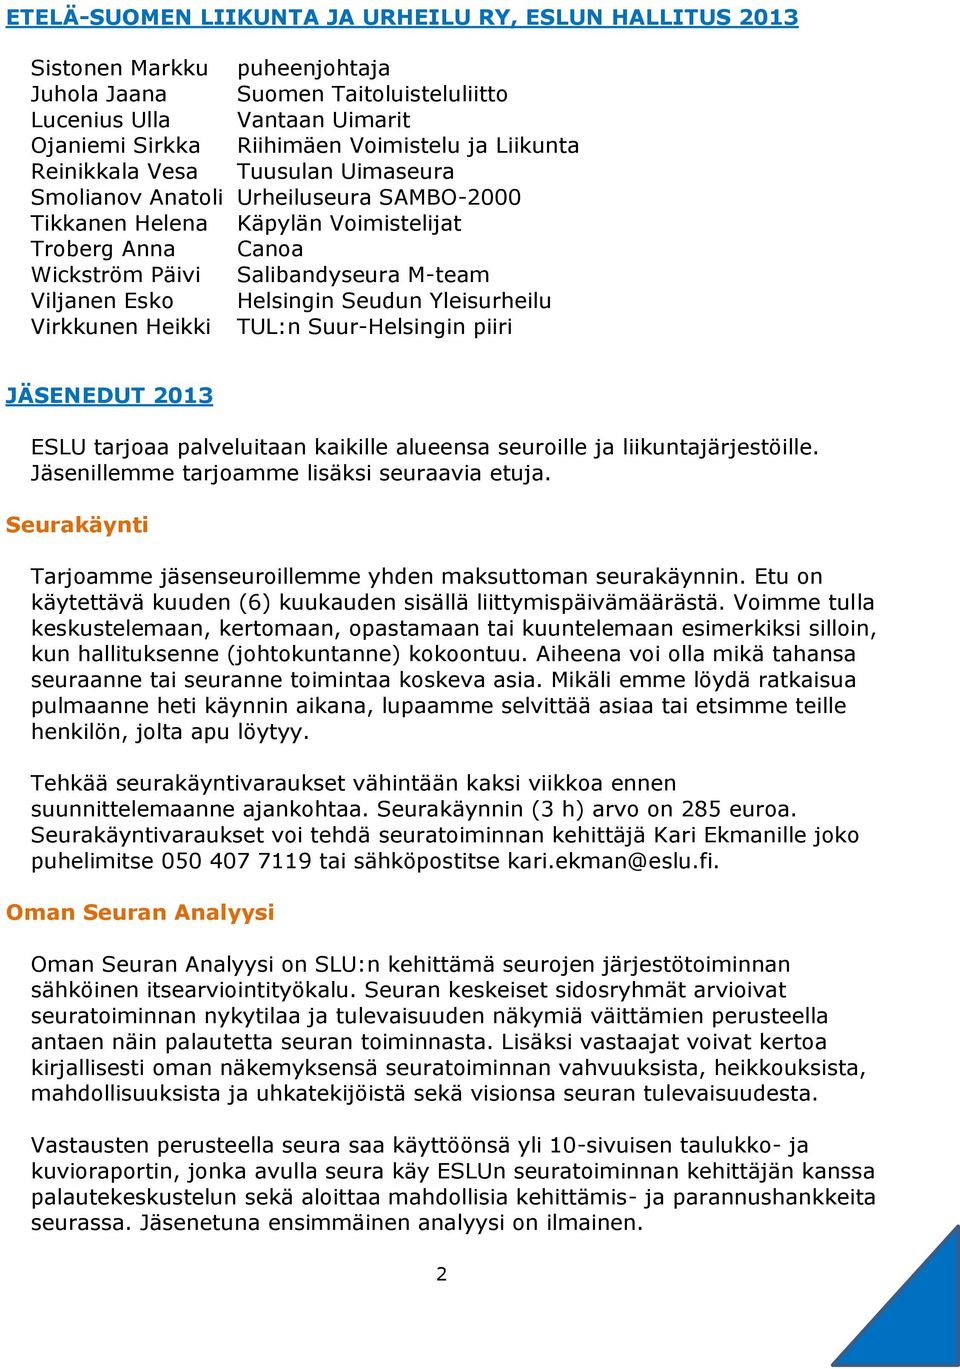 Helsingin Seudun Yleisurheilu Virkkunen Heikki TUL:n Suur-Helsingin piiri JÄSENEDUT 2013 ESLU tarjoaa palveluitaan kaikille alueensa seuroille ja liikuntajärjestöille.